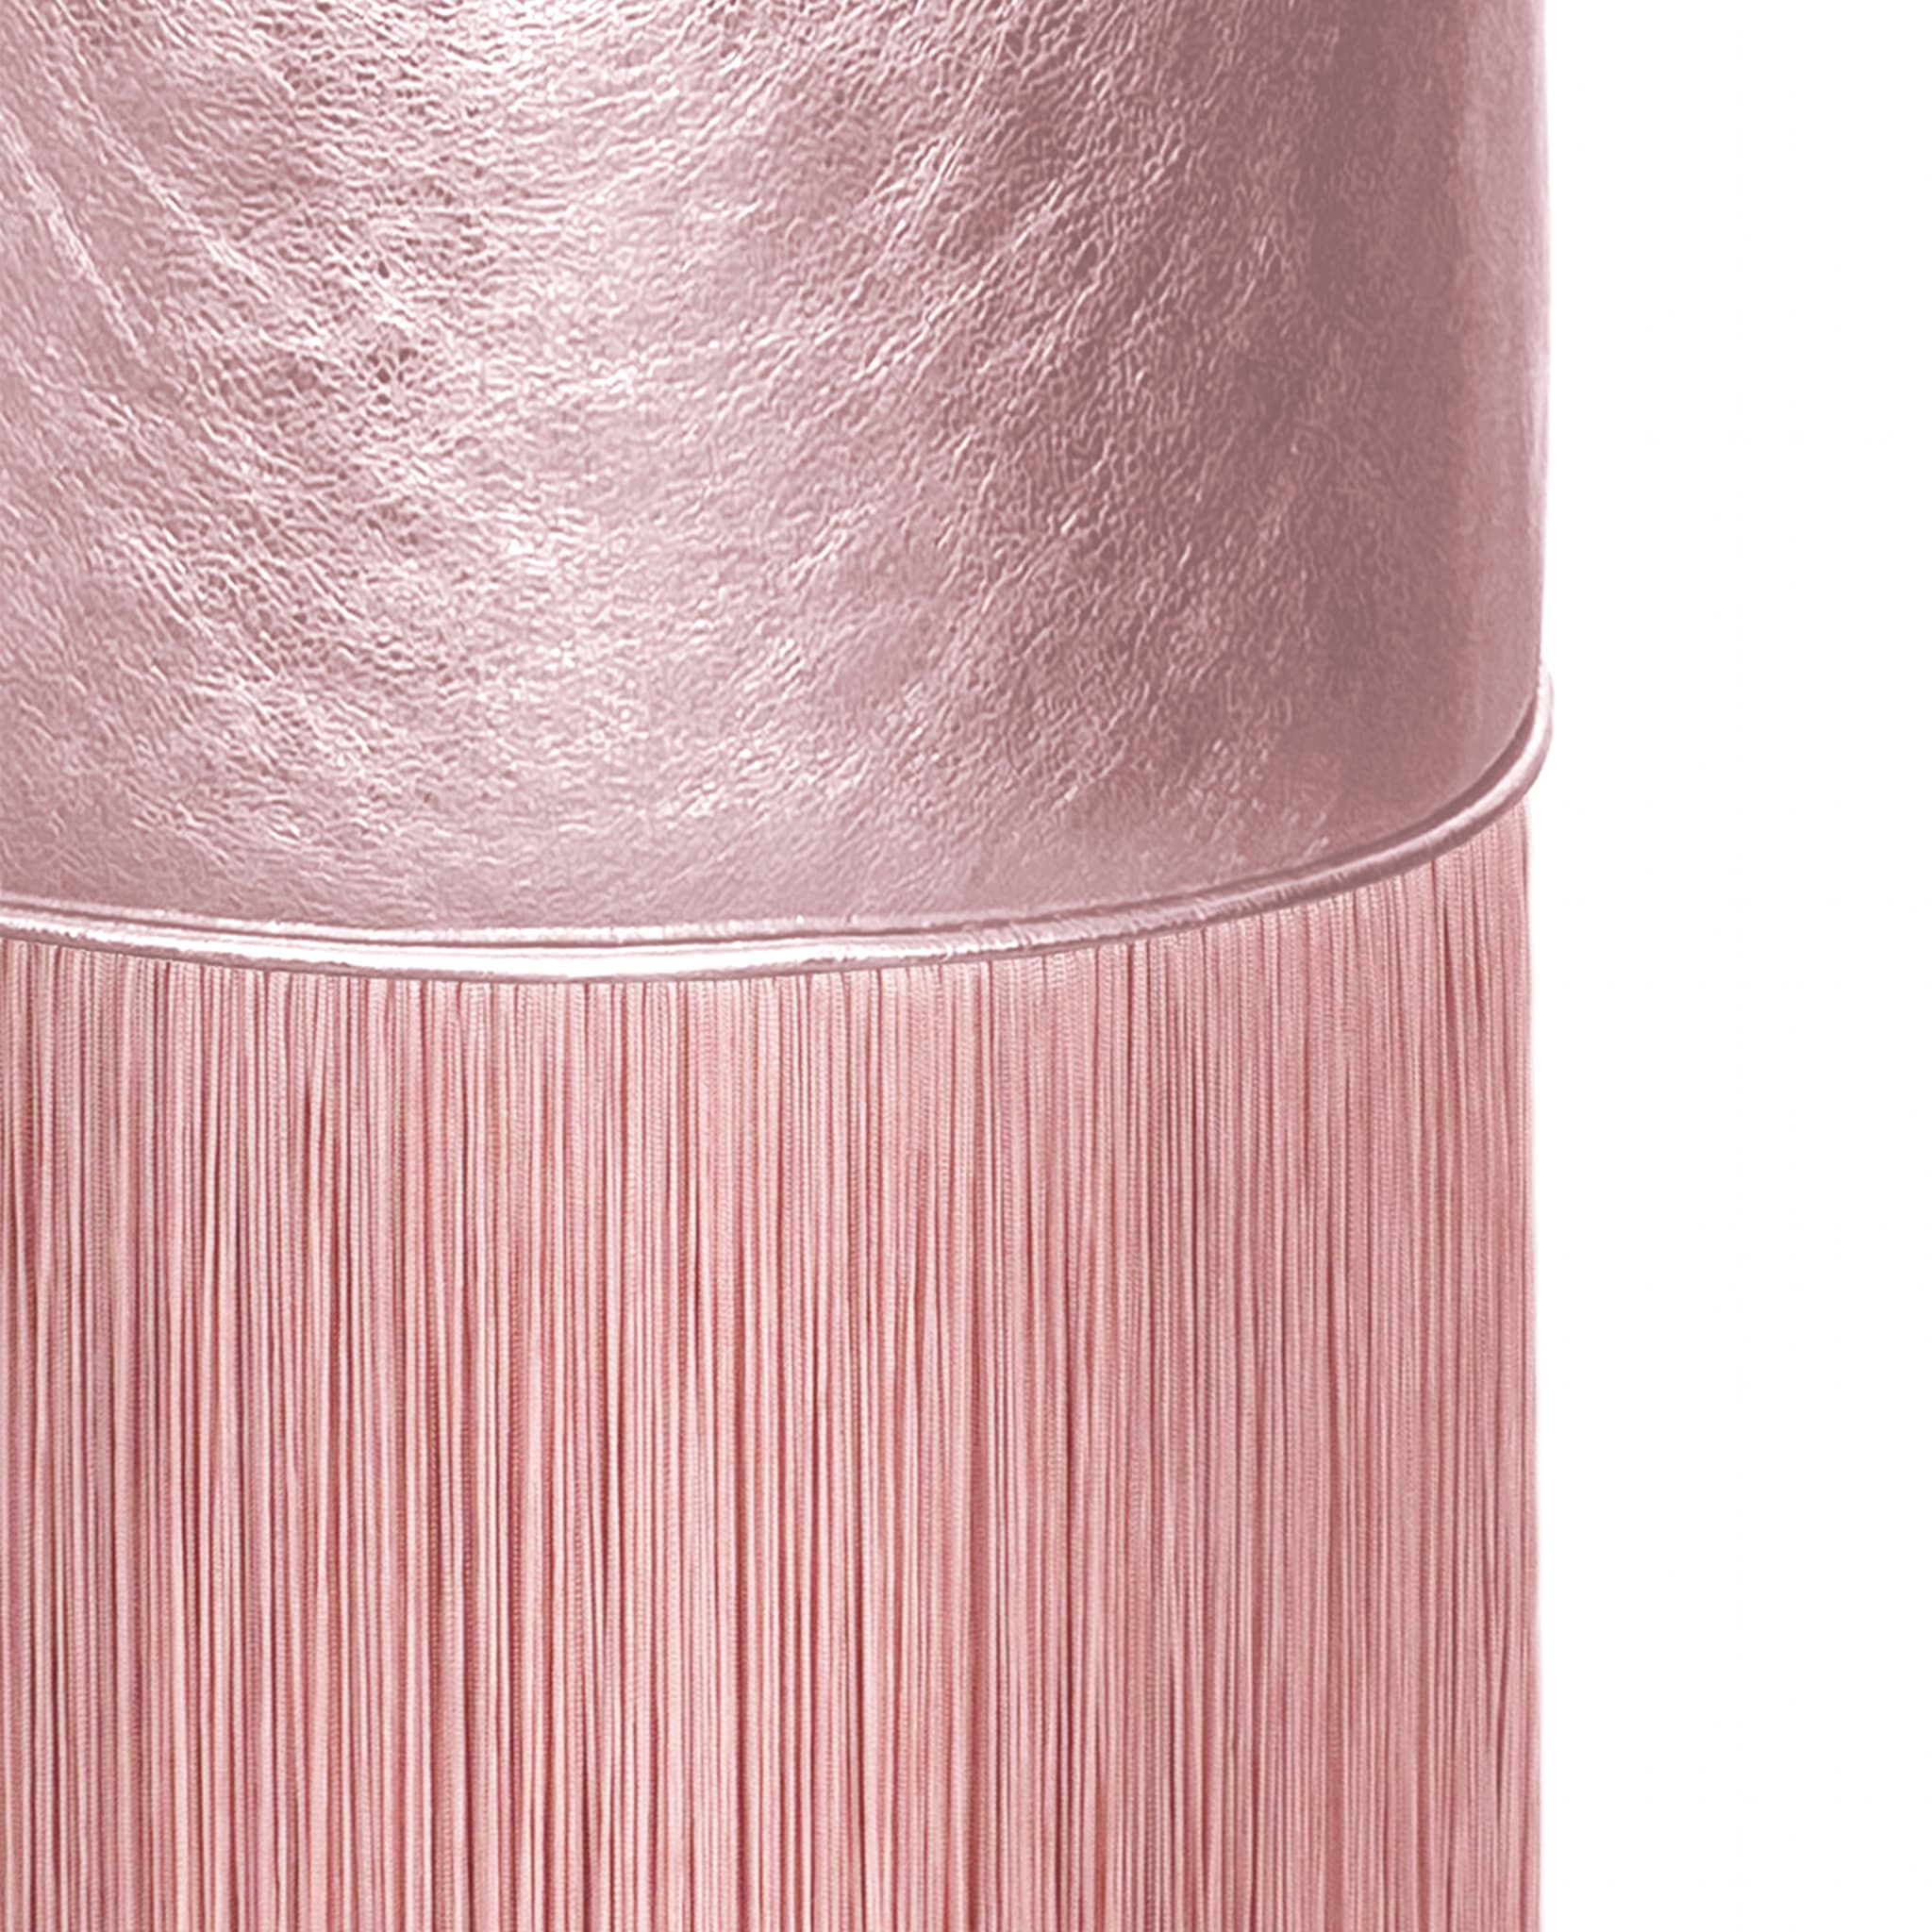 Pouf in pelle metallizzata rosa chiaro di Lorenza Bozzoli - Vista alternativa 1